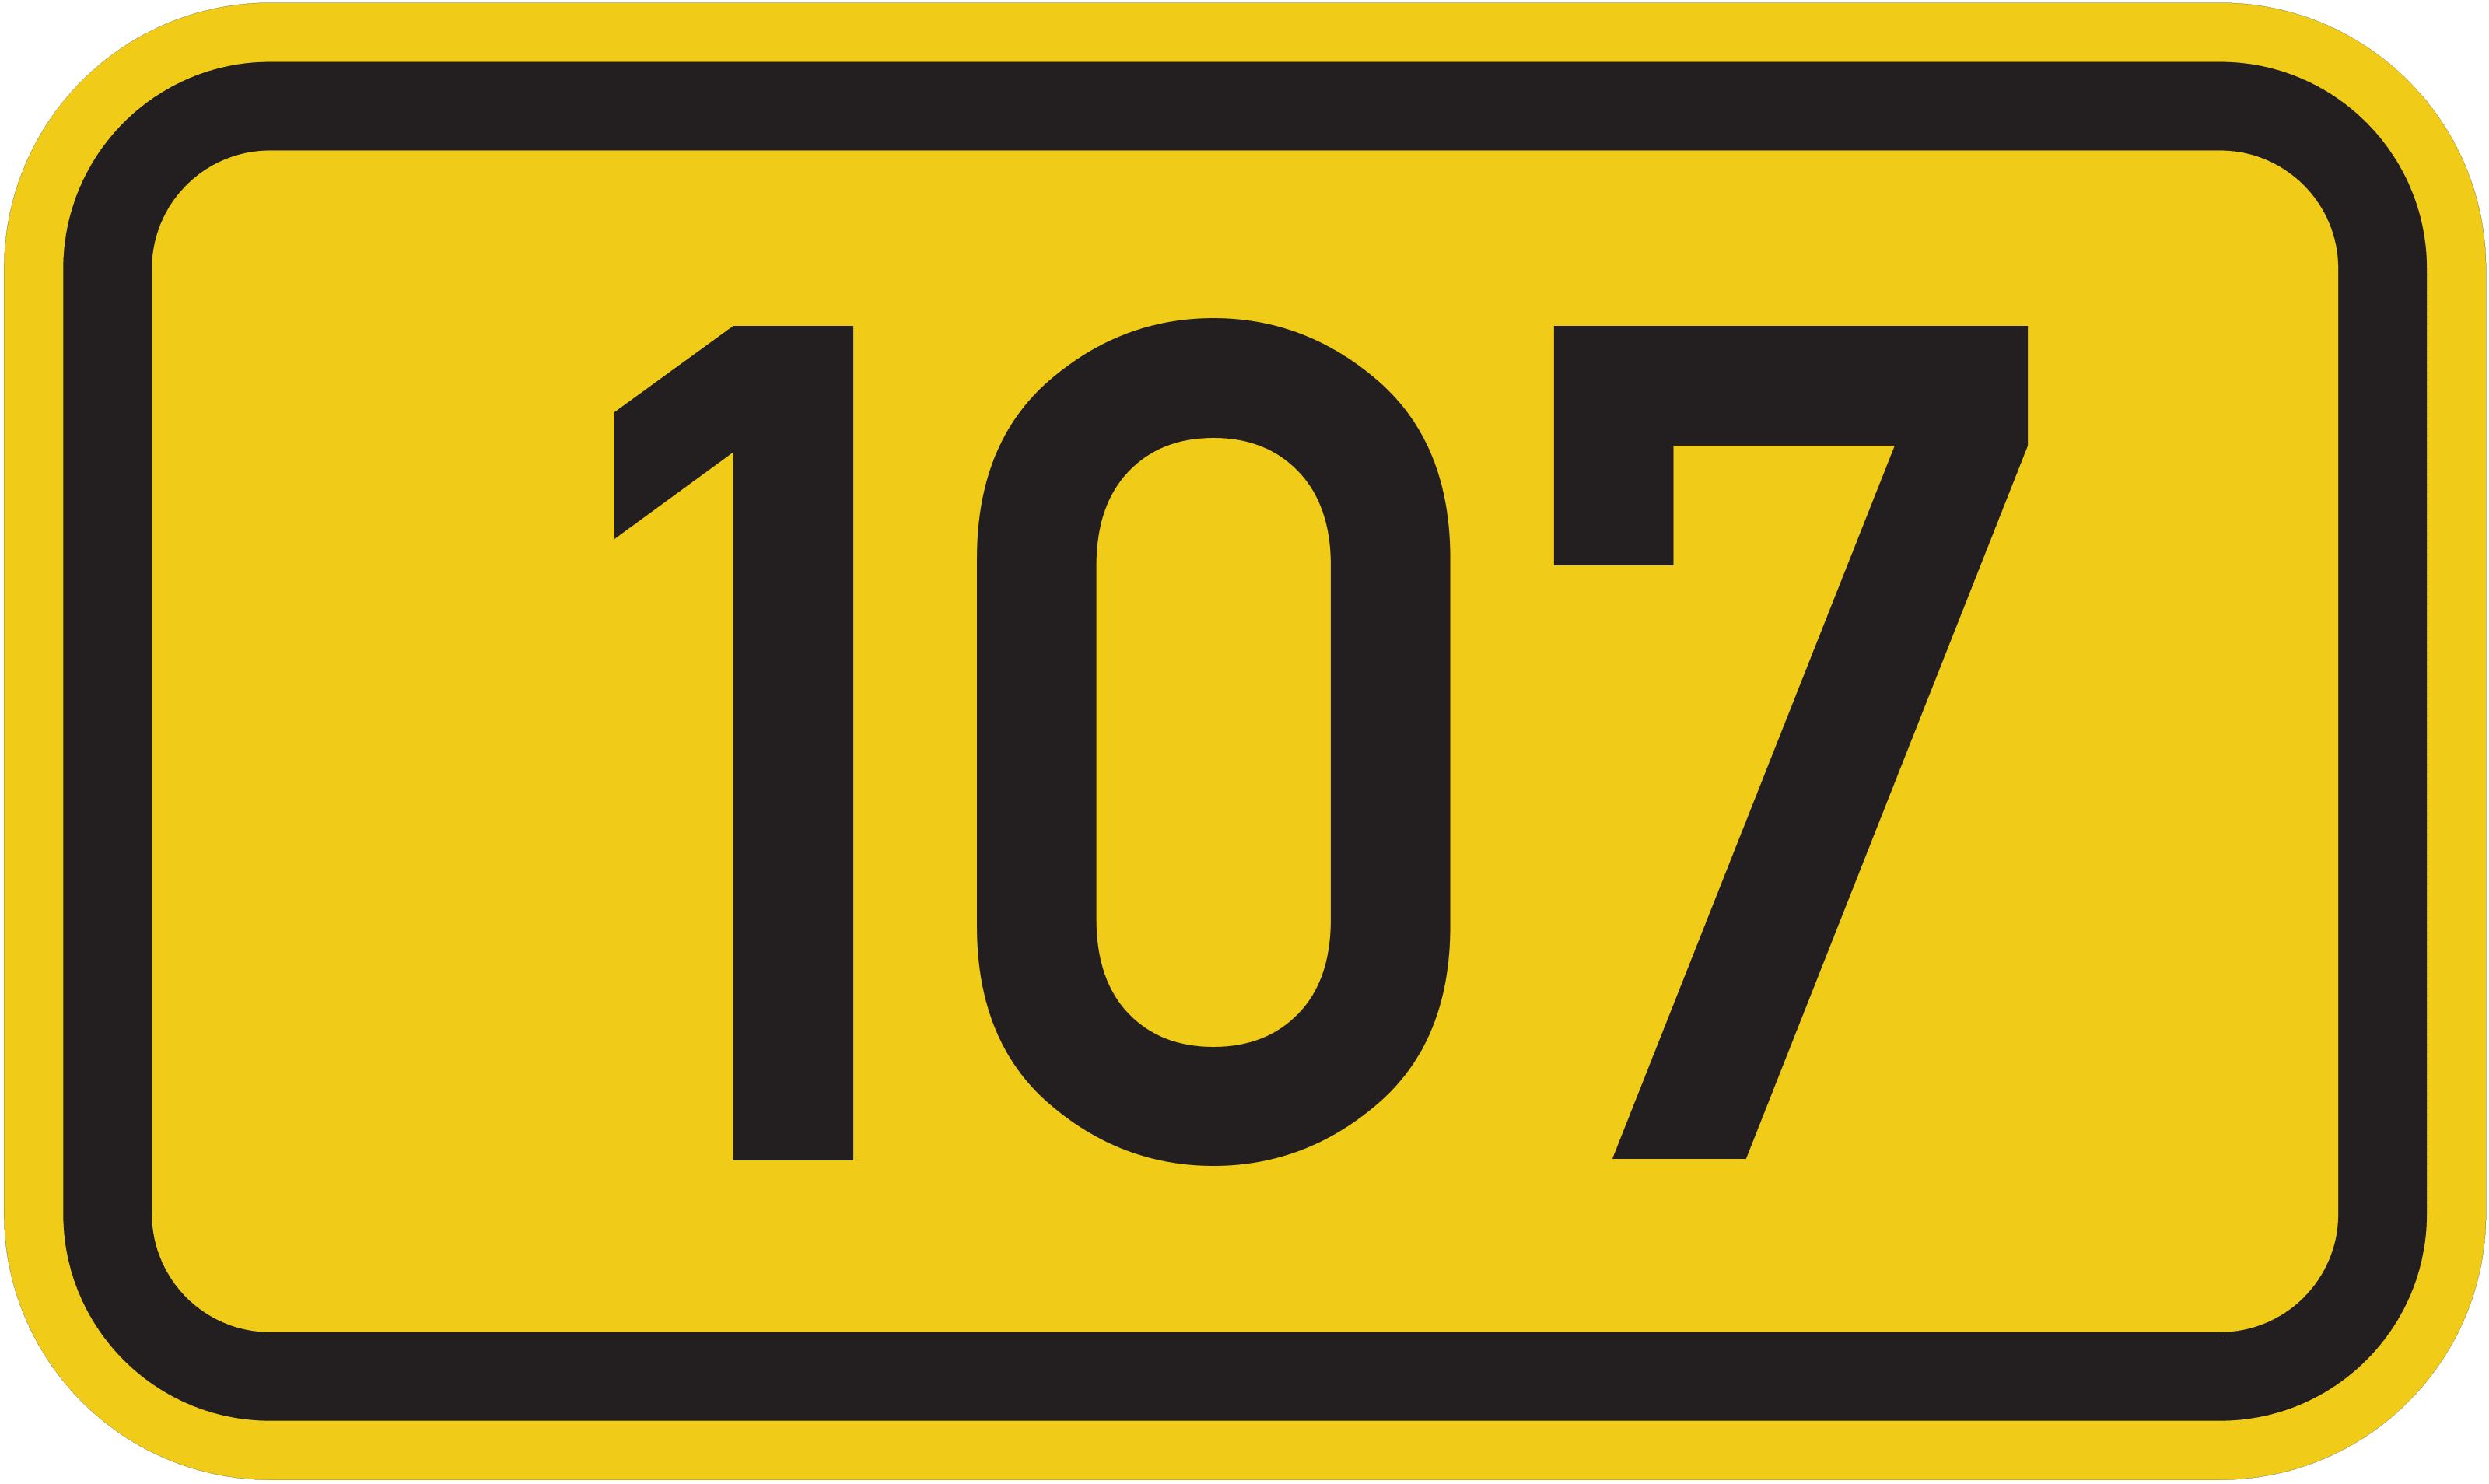 Bundesstraße B 107